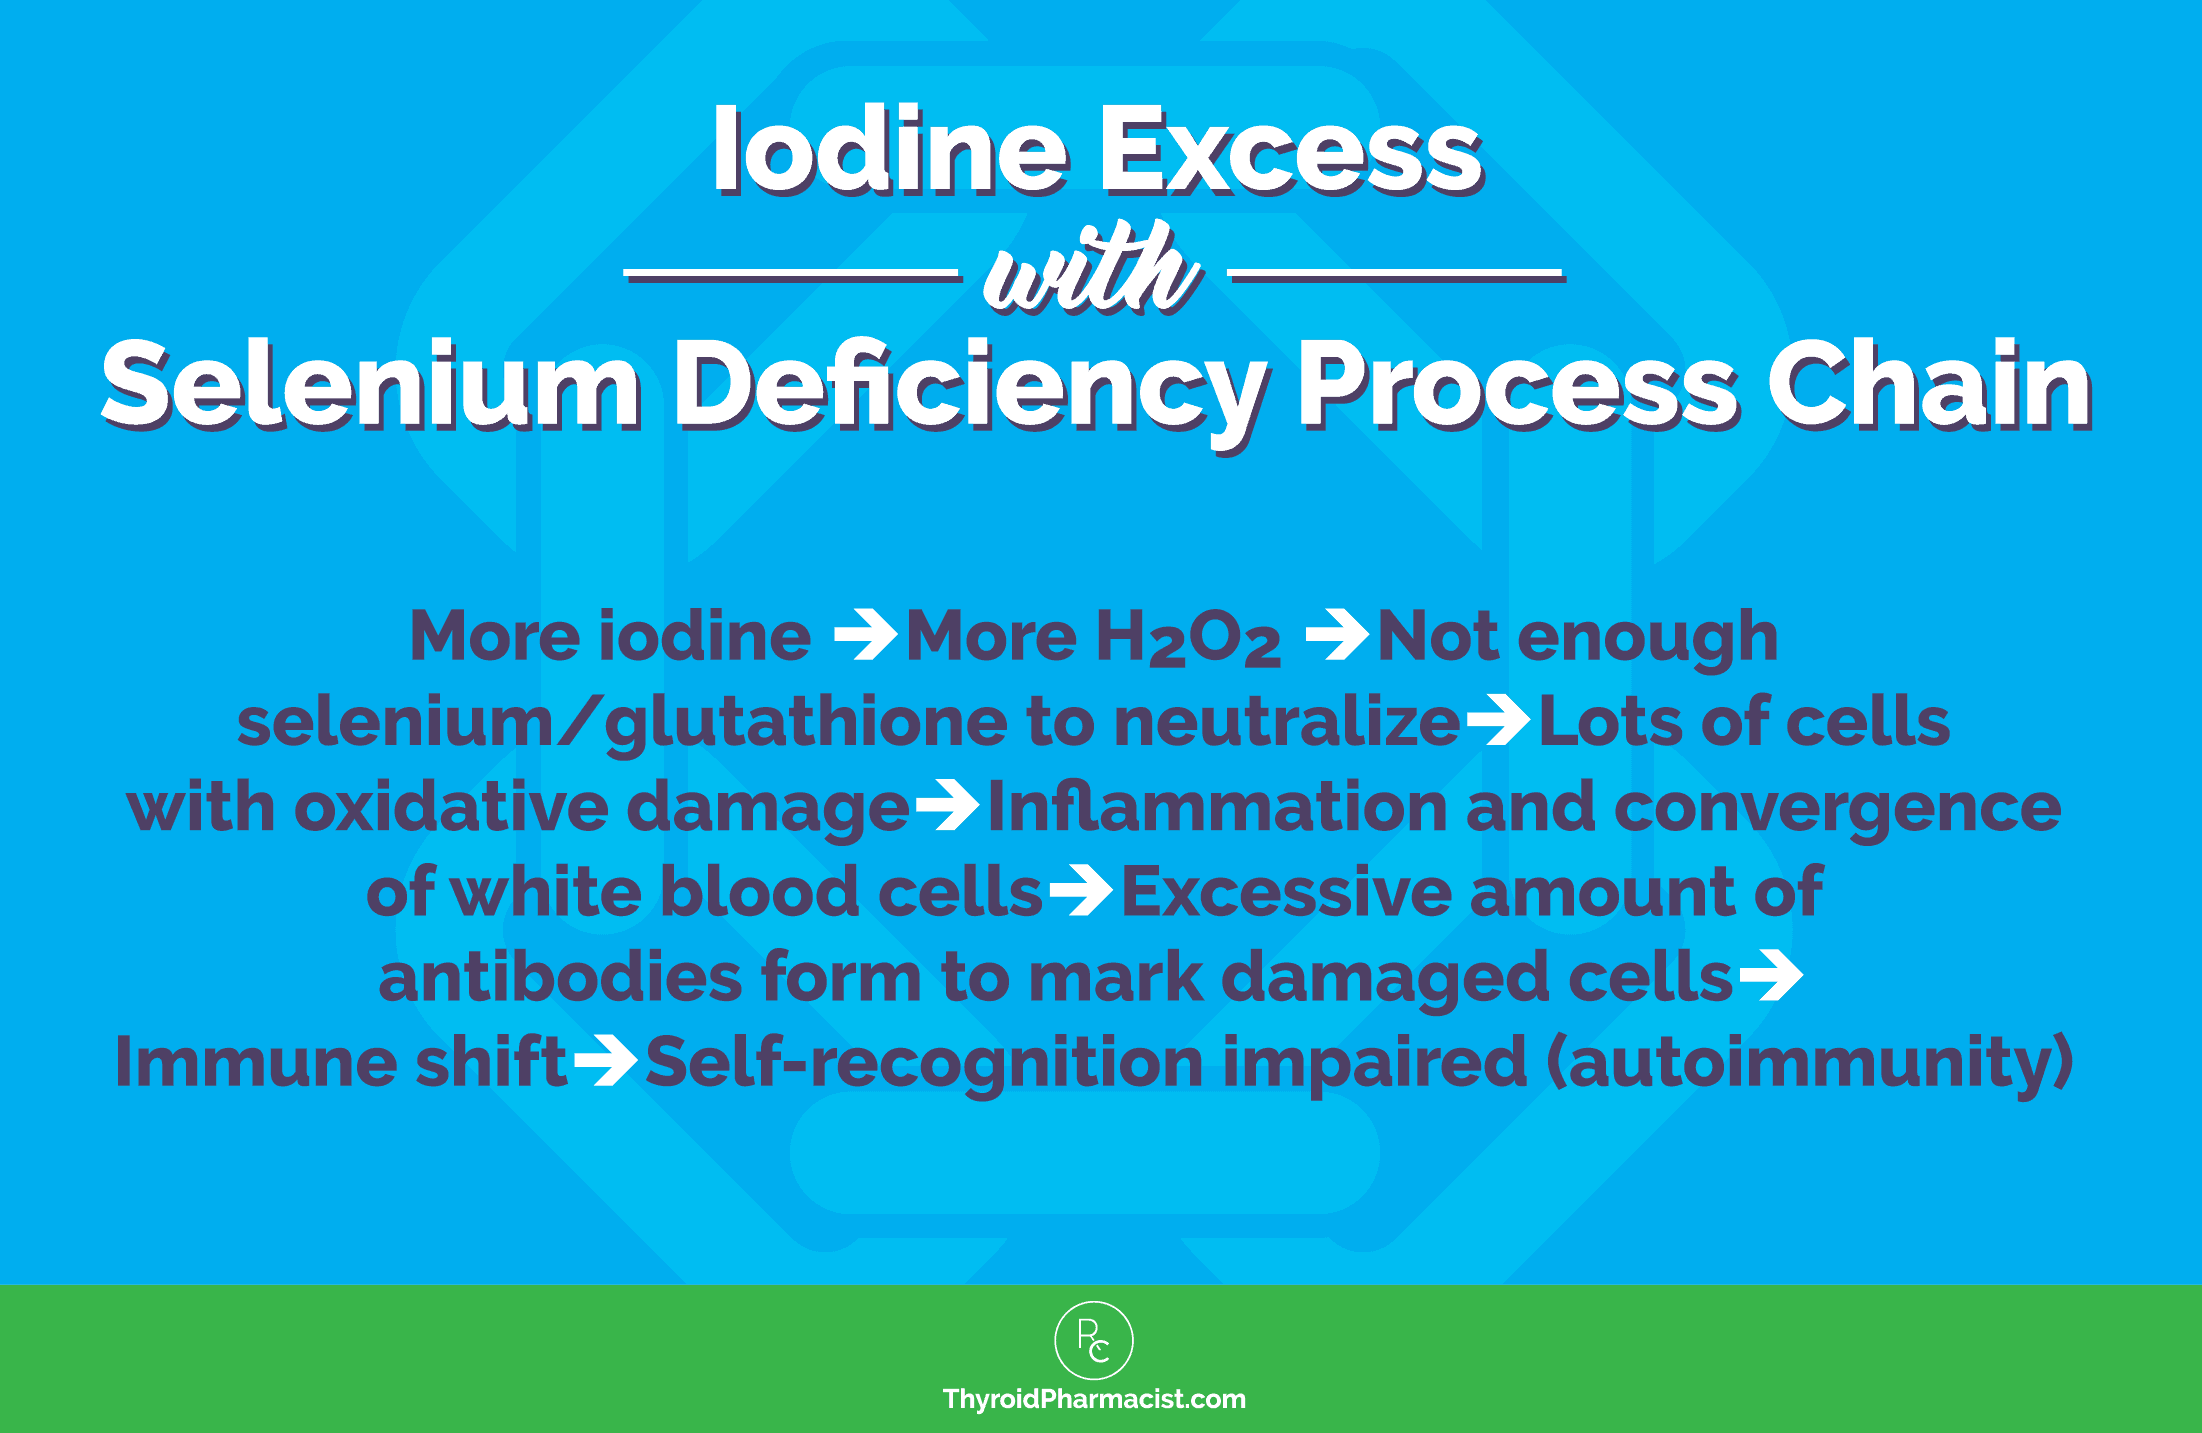 iodine supplement uses